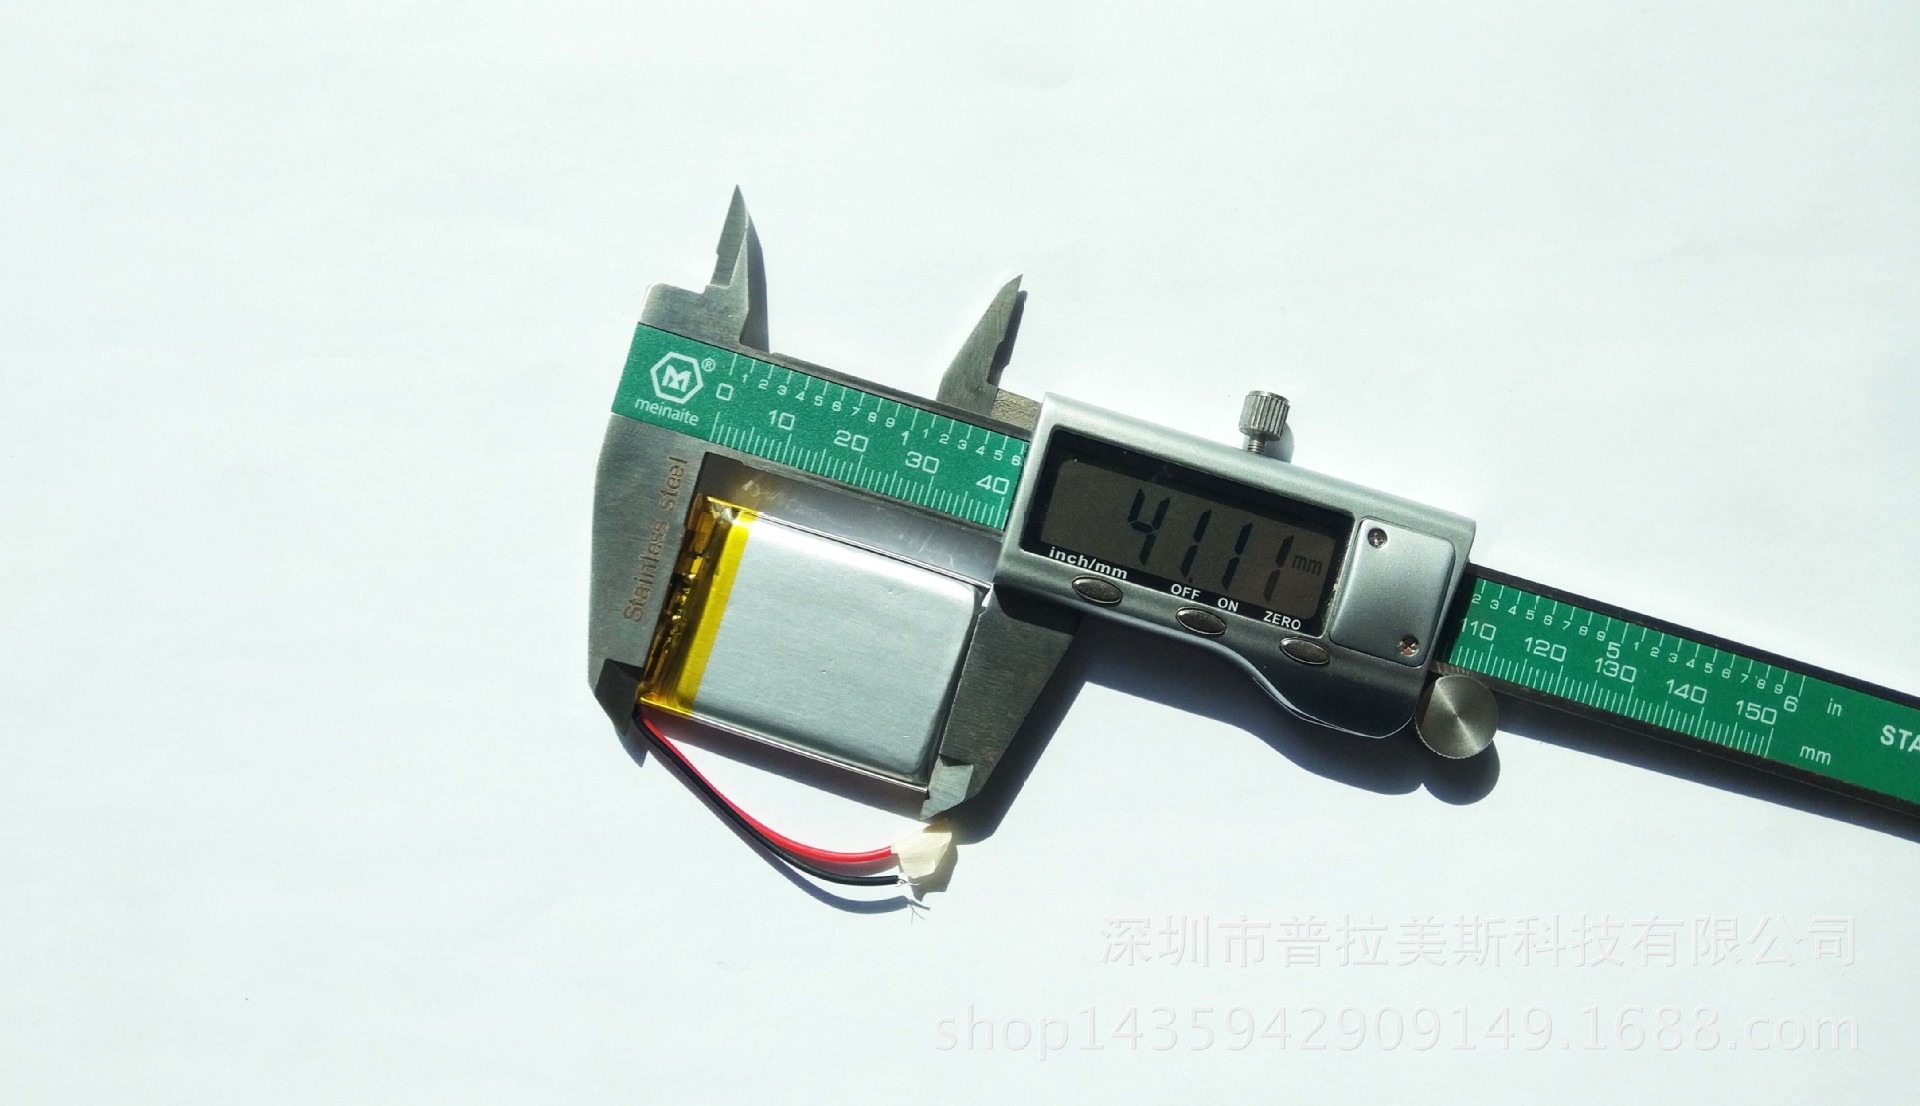 可充电聚合物锂电池603040/600MAH 美容仪按摩器蓝牙音箱手柄电池示例图8